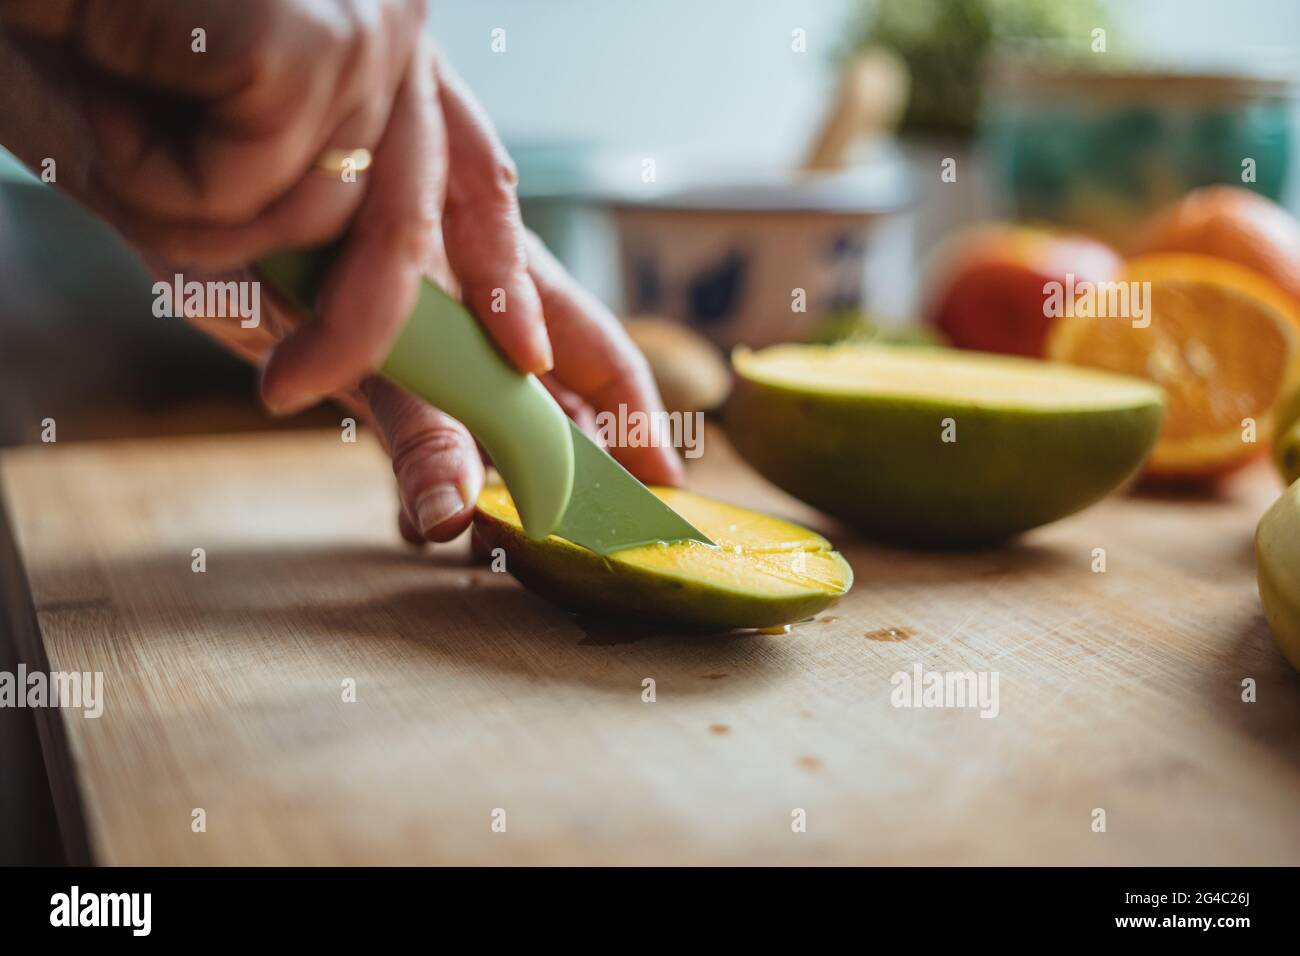 Eine Frau schneidet eine Mango mit einem grünen Messer auf einem Holztisch, der von anderen Früchten umgeben ist. Stockfoto